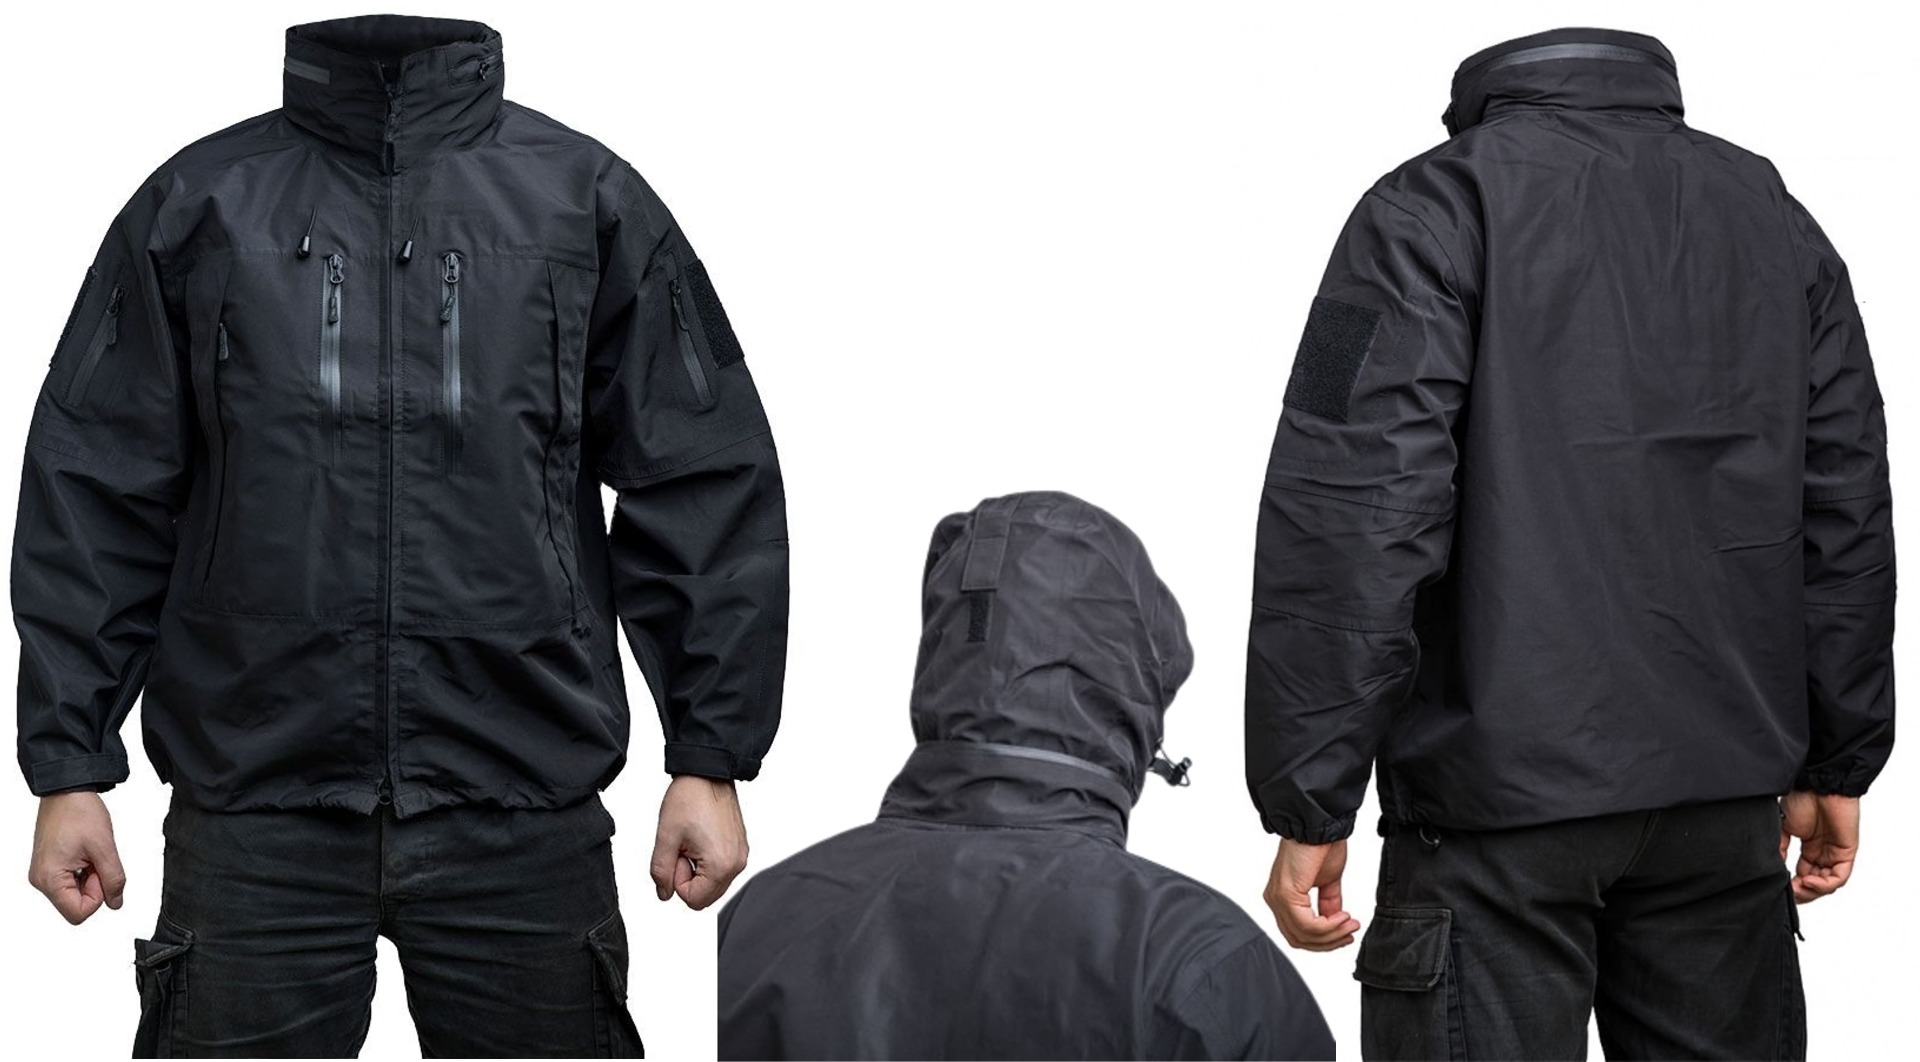 Odkrijte vrhunsko 3-slojno taktično softshell jakno model PCU v črni barvi. Nepremočljiva, protivetrna in udobna jakna za aktivnosti na prostem v vseh vremenskih razmerah.